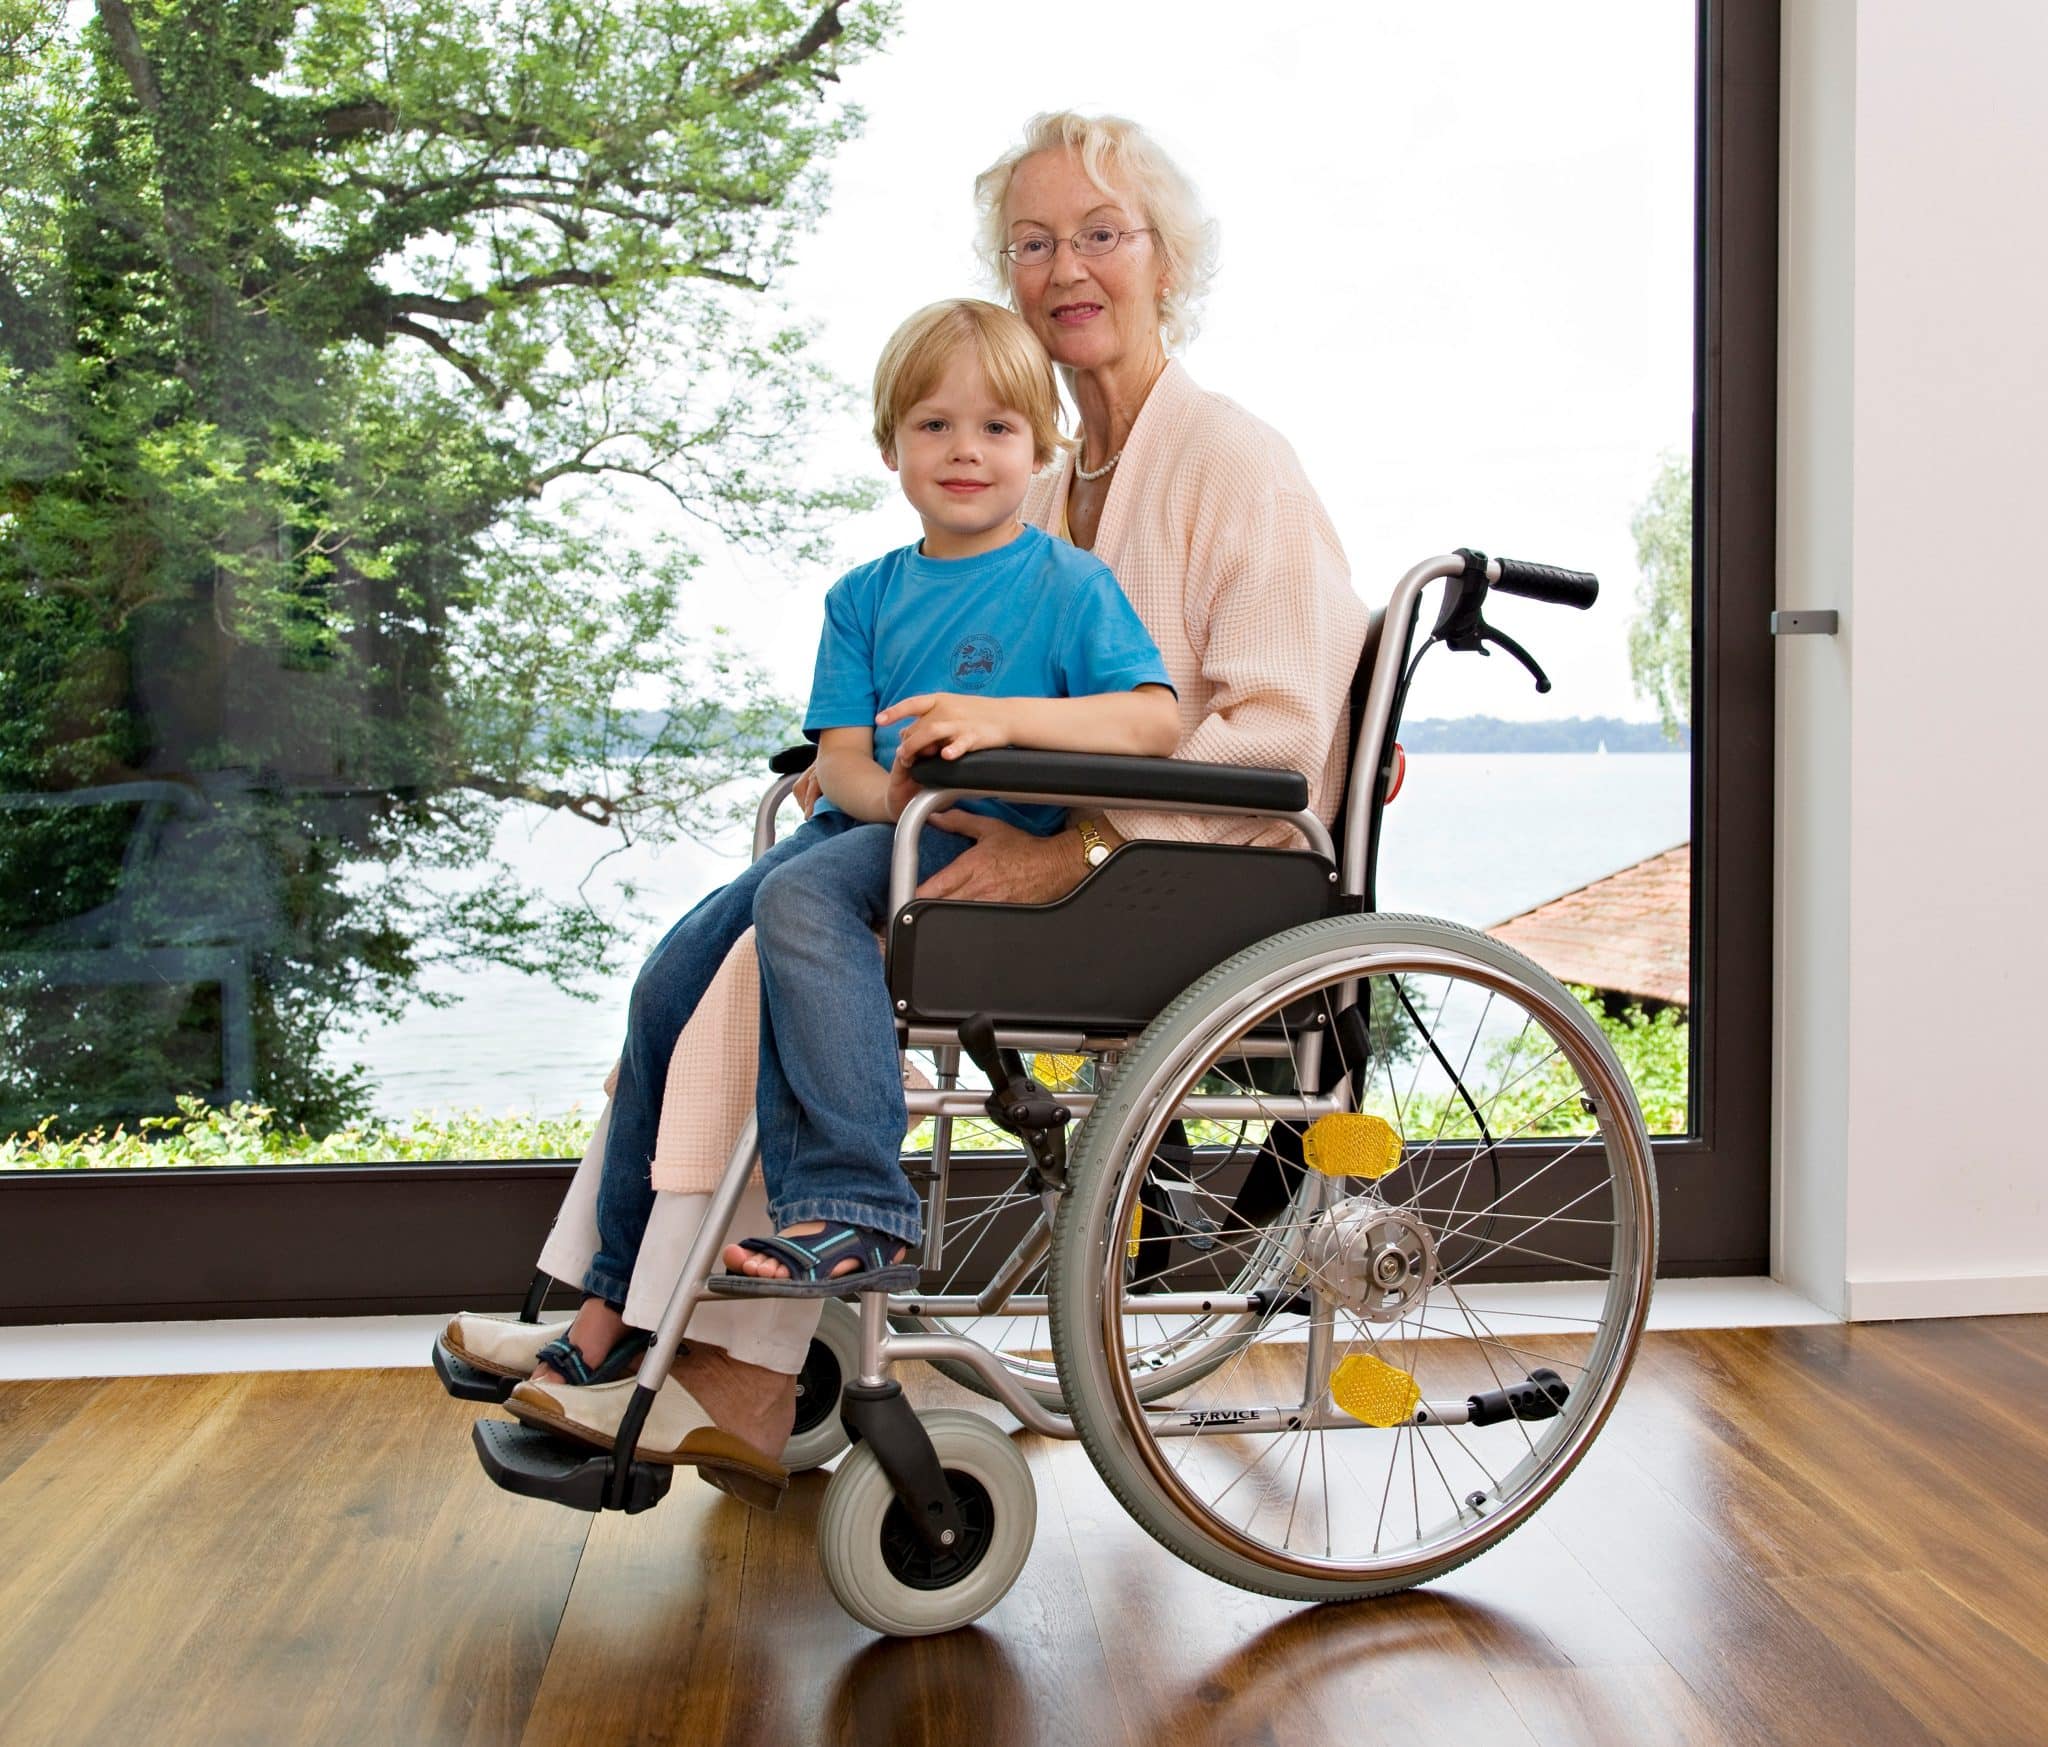 Quels sont les avantages d’un monte escalier pour personne âgée ?